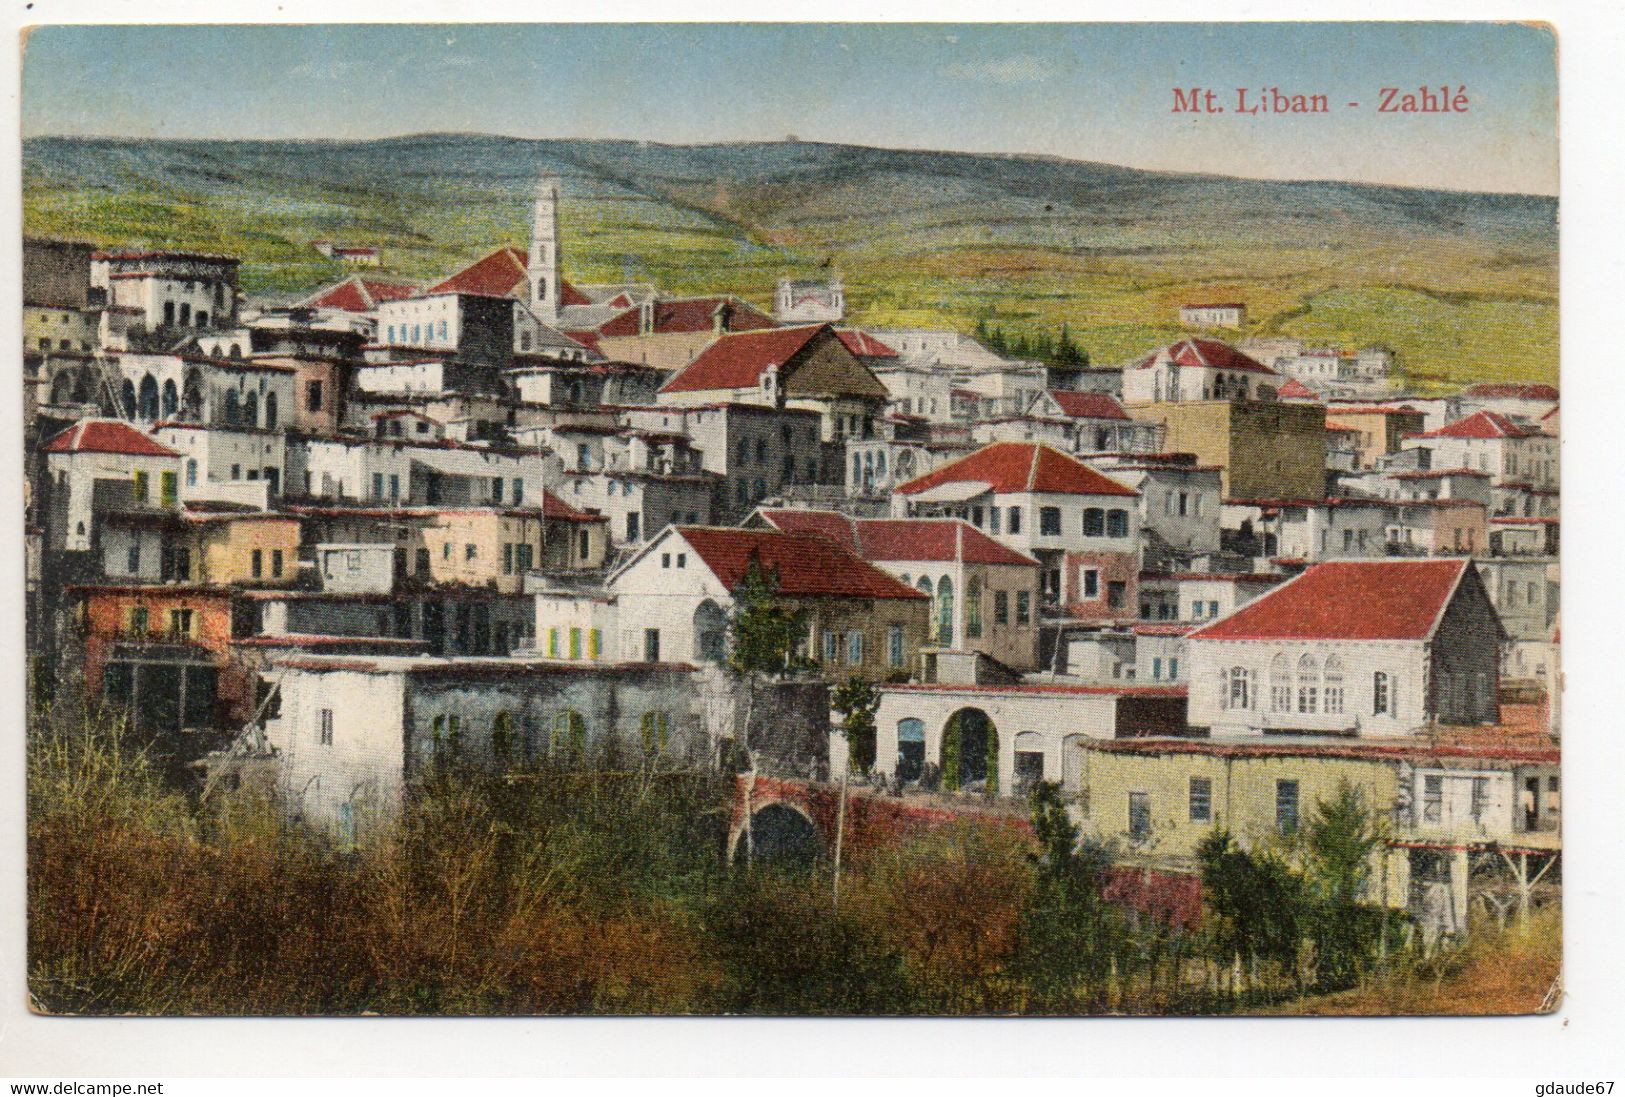 MONT LIBAN - ZAHLE - Lebanon